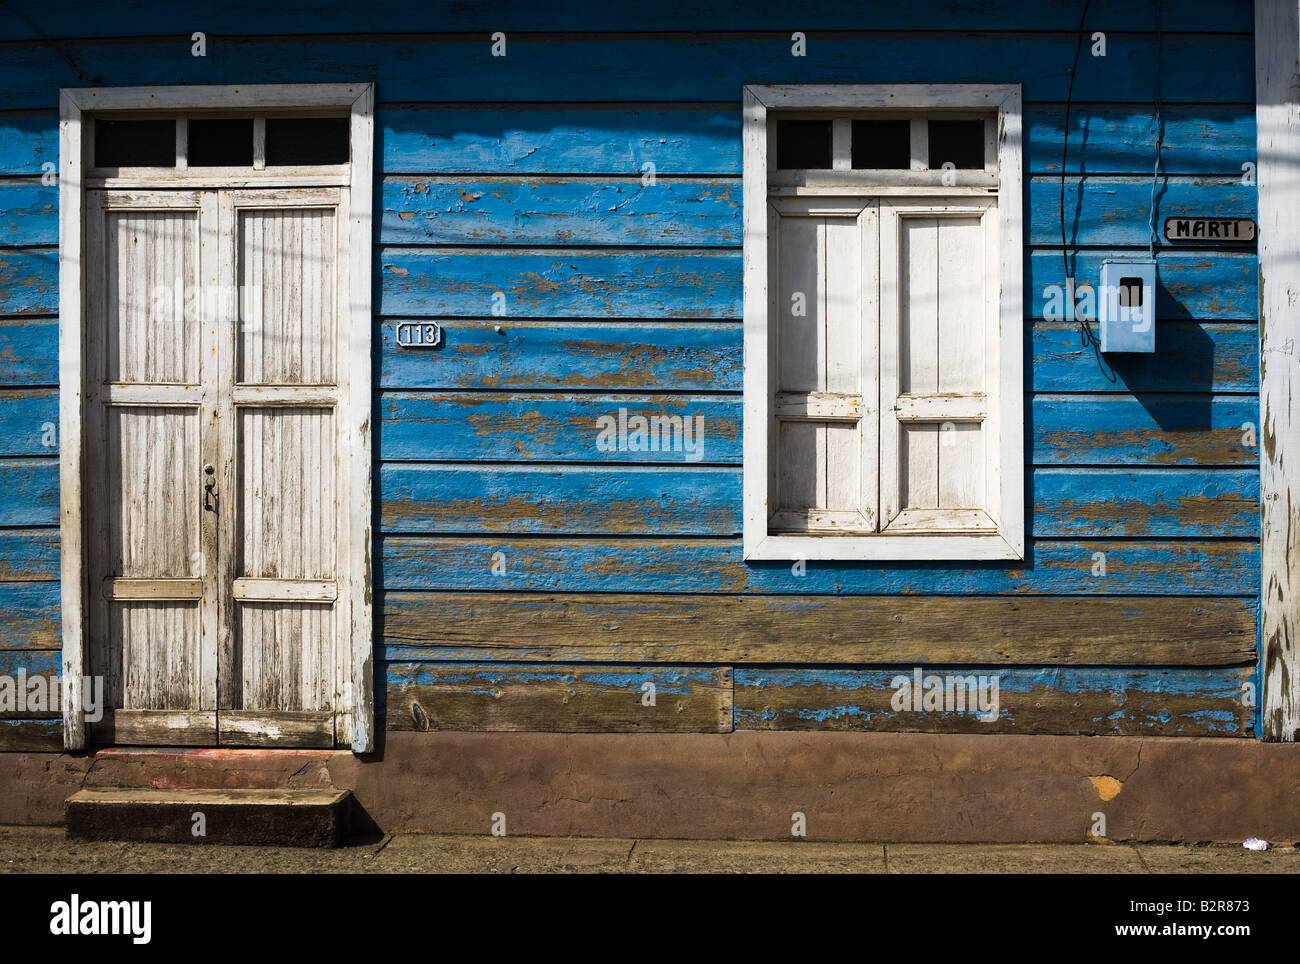 En la fachada de la Casa Marti Calle Baracoa, Cuba Foto de stock